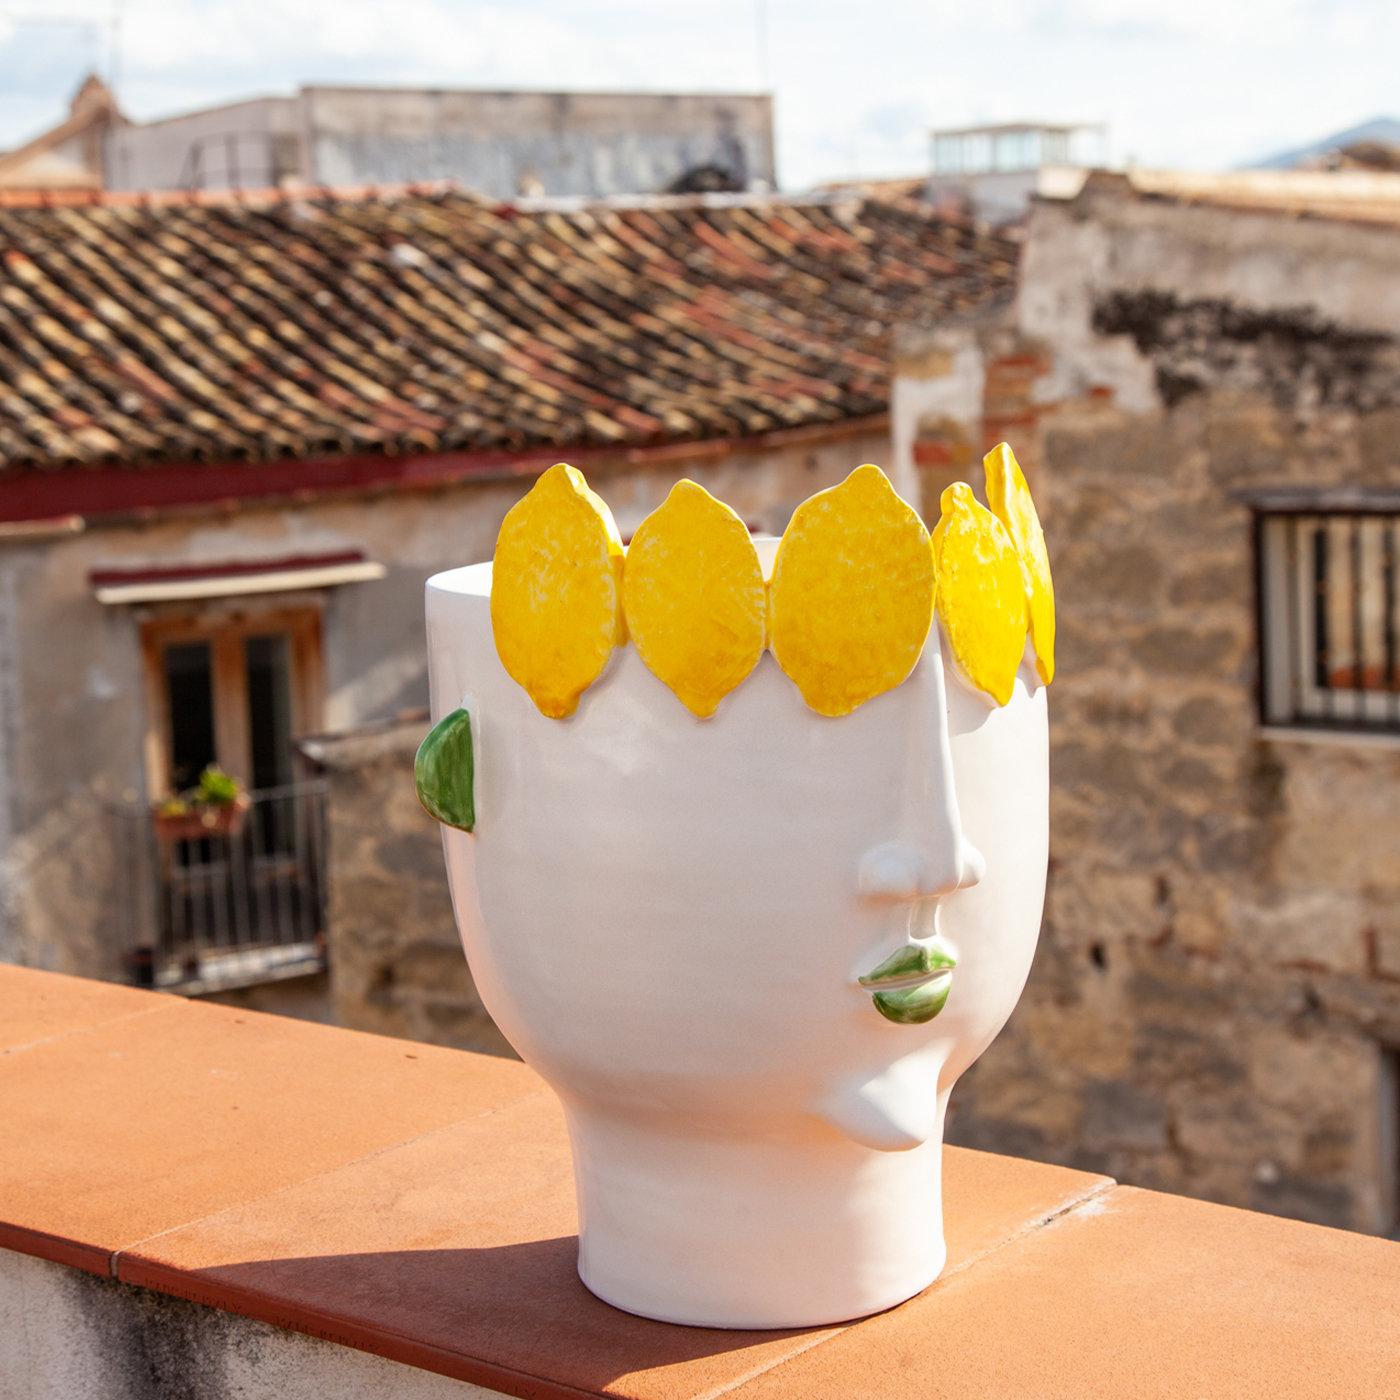 Ce vase en forme de tête, entièrement unique, en céramique blanche mate, a été fabriqué à la main en hommage à la valeur folklorique des marchés de rue siciliens. Son design anthropomorphique a été inspiré par Filomena, une vendeuse ambulante de